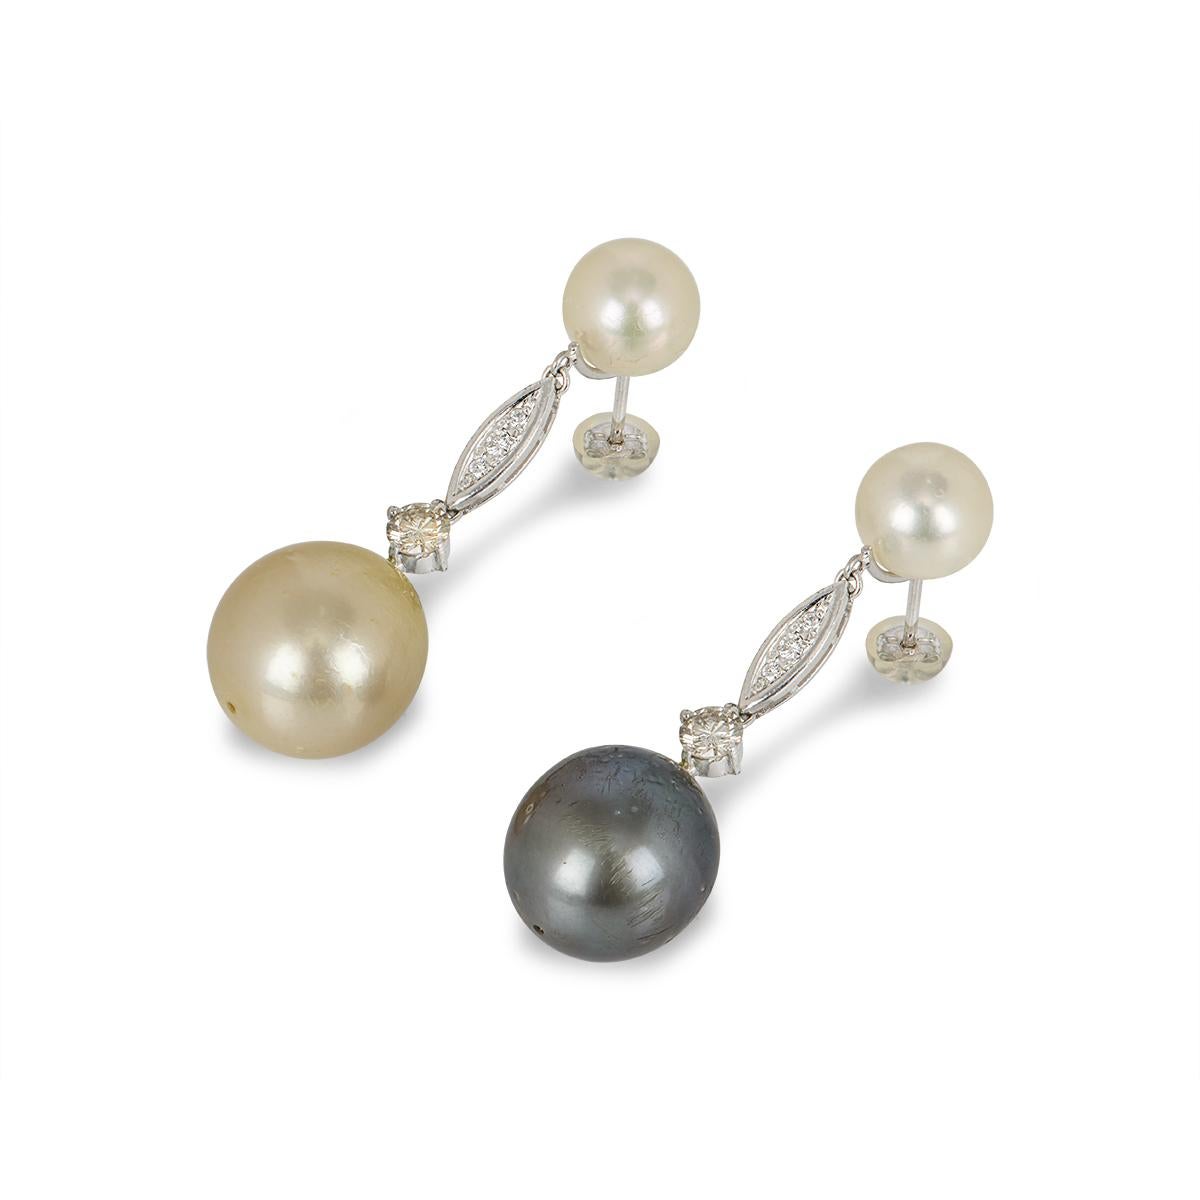 Paire de boucles d'oreilles en or blanc 18 carats, perles et diamants. Chaque Whiting se compose d'une perle blanche de 9 mm de diamètre, sur laquelle est serti un diamant rond de taille brillant. Le diamant unique est suspendu à une perle plus